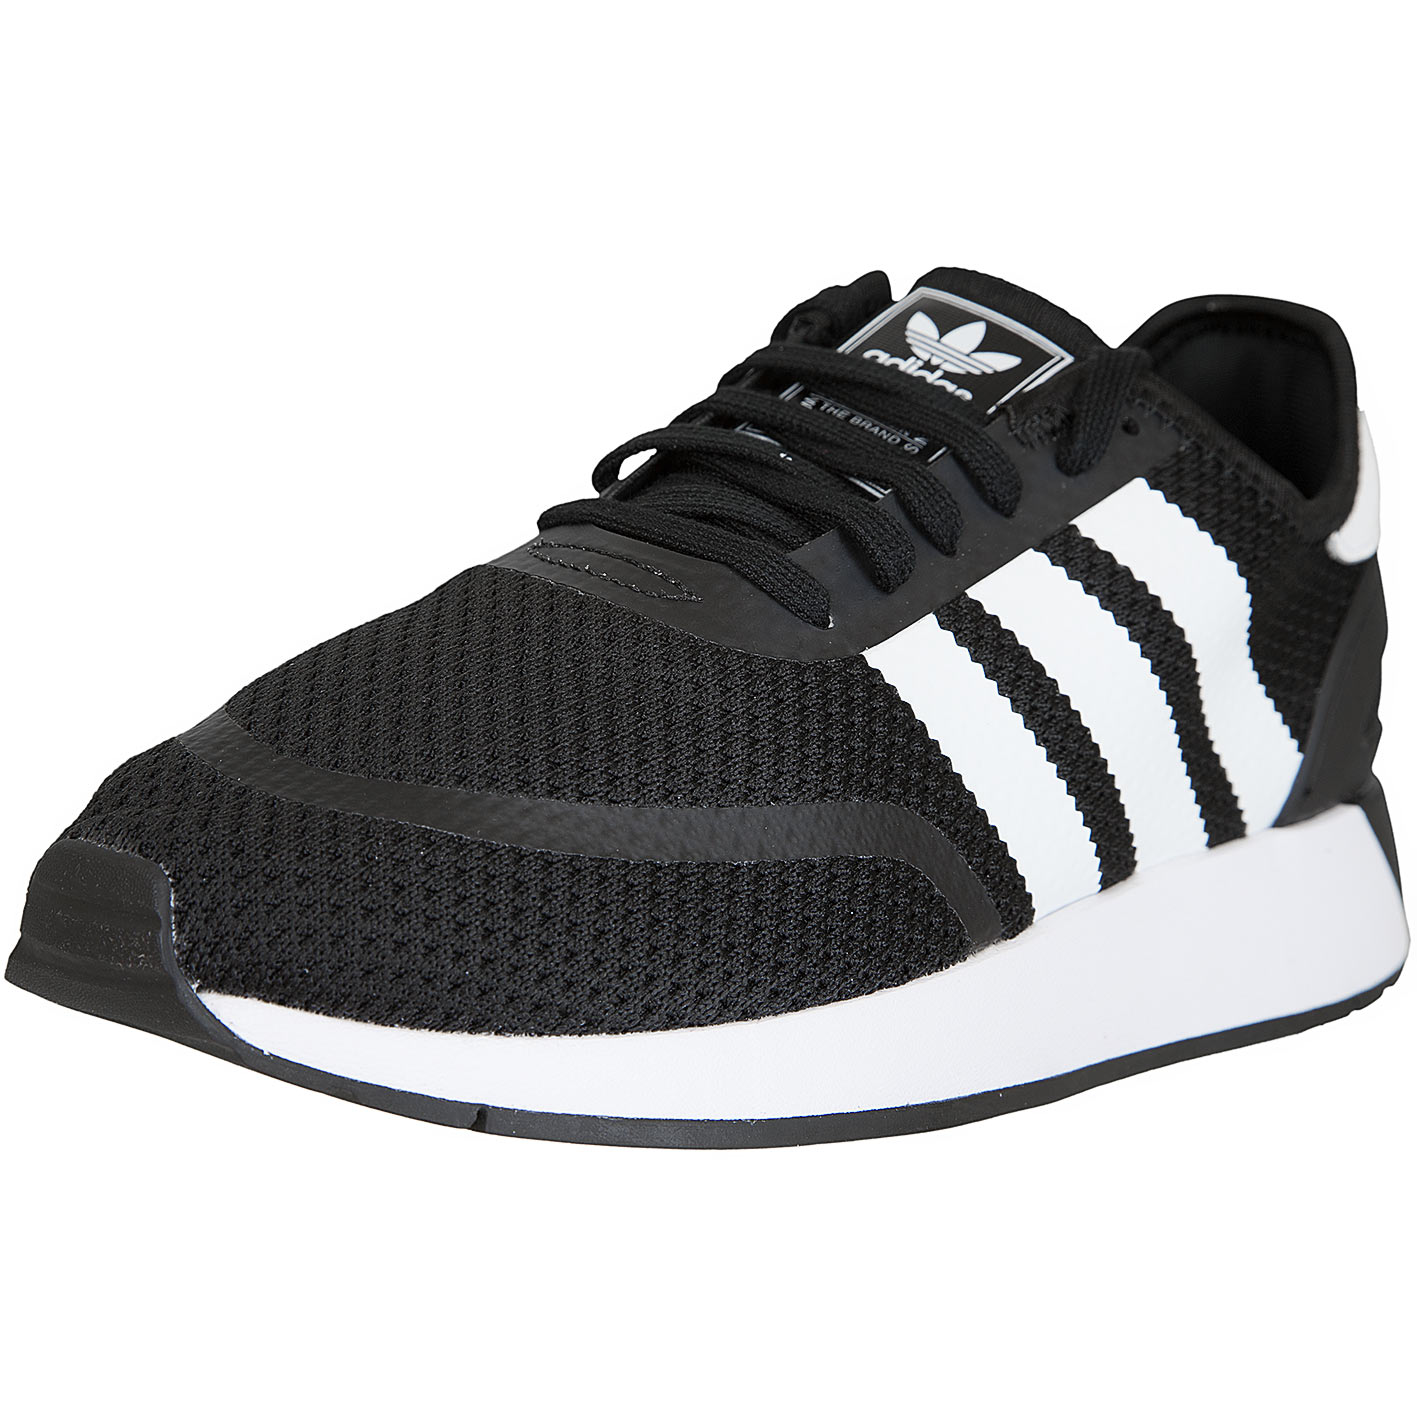 ☆ Adidas Originals Sneaker N-5923 schwarz/weiß - hier bestellen!